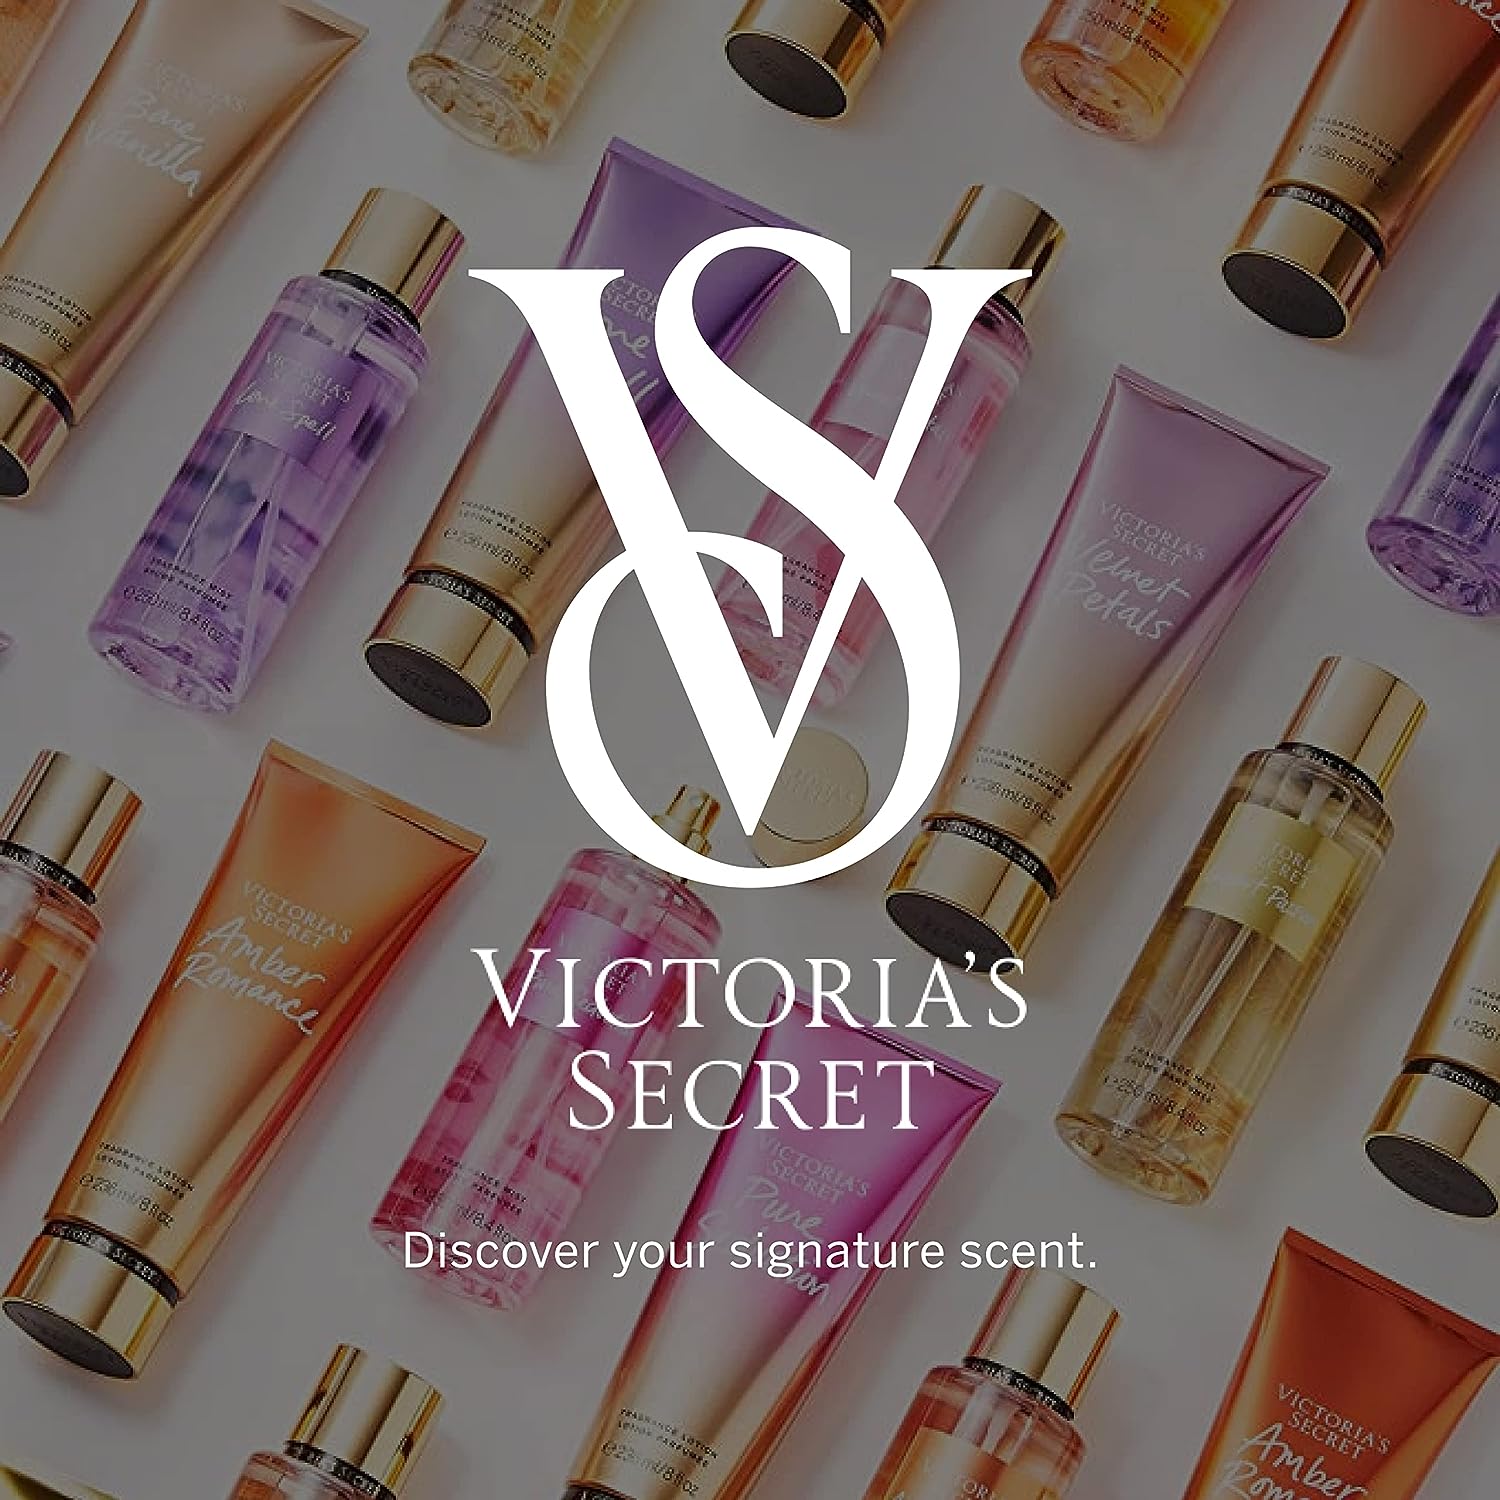 بادی اسپلش ویکتوریا سکرت ولوت پتالز شیمر Victoria Secret Velvet Petals Shimmer